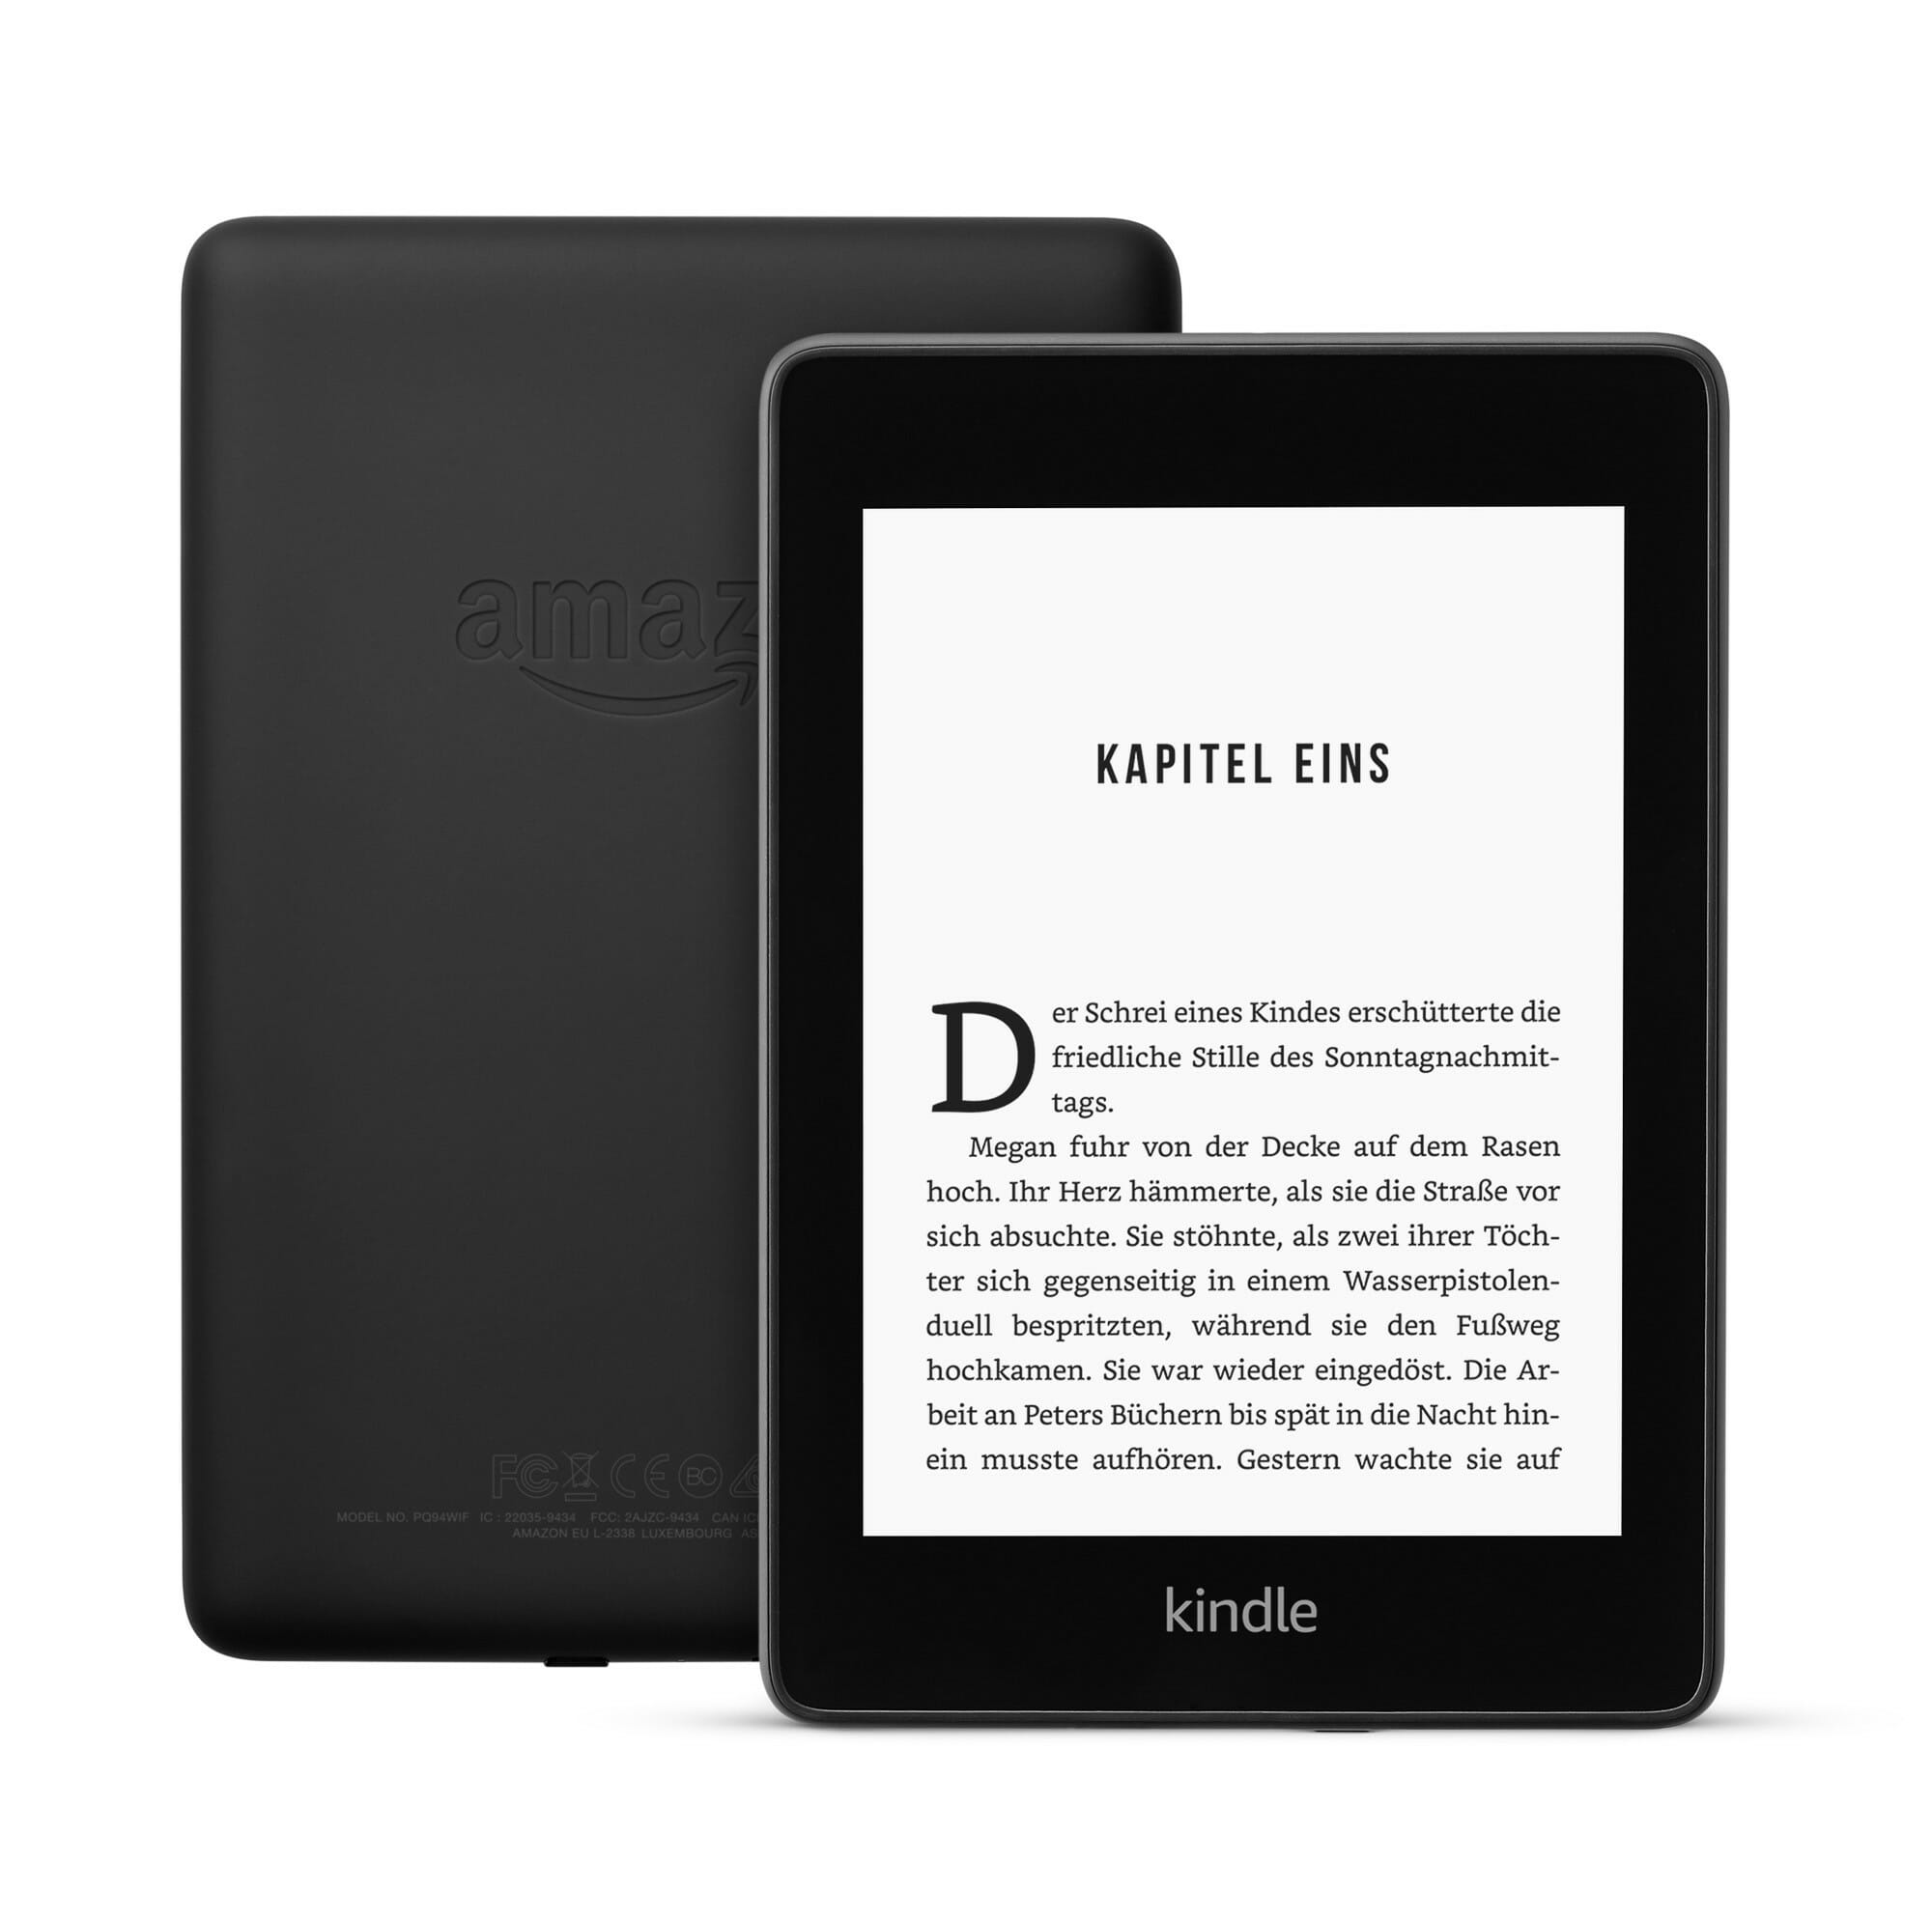 Amazon Präsentiert Neuen Kindle Paperwhite 2018 Was Ist Neu Und